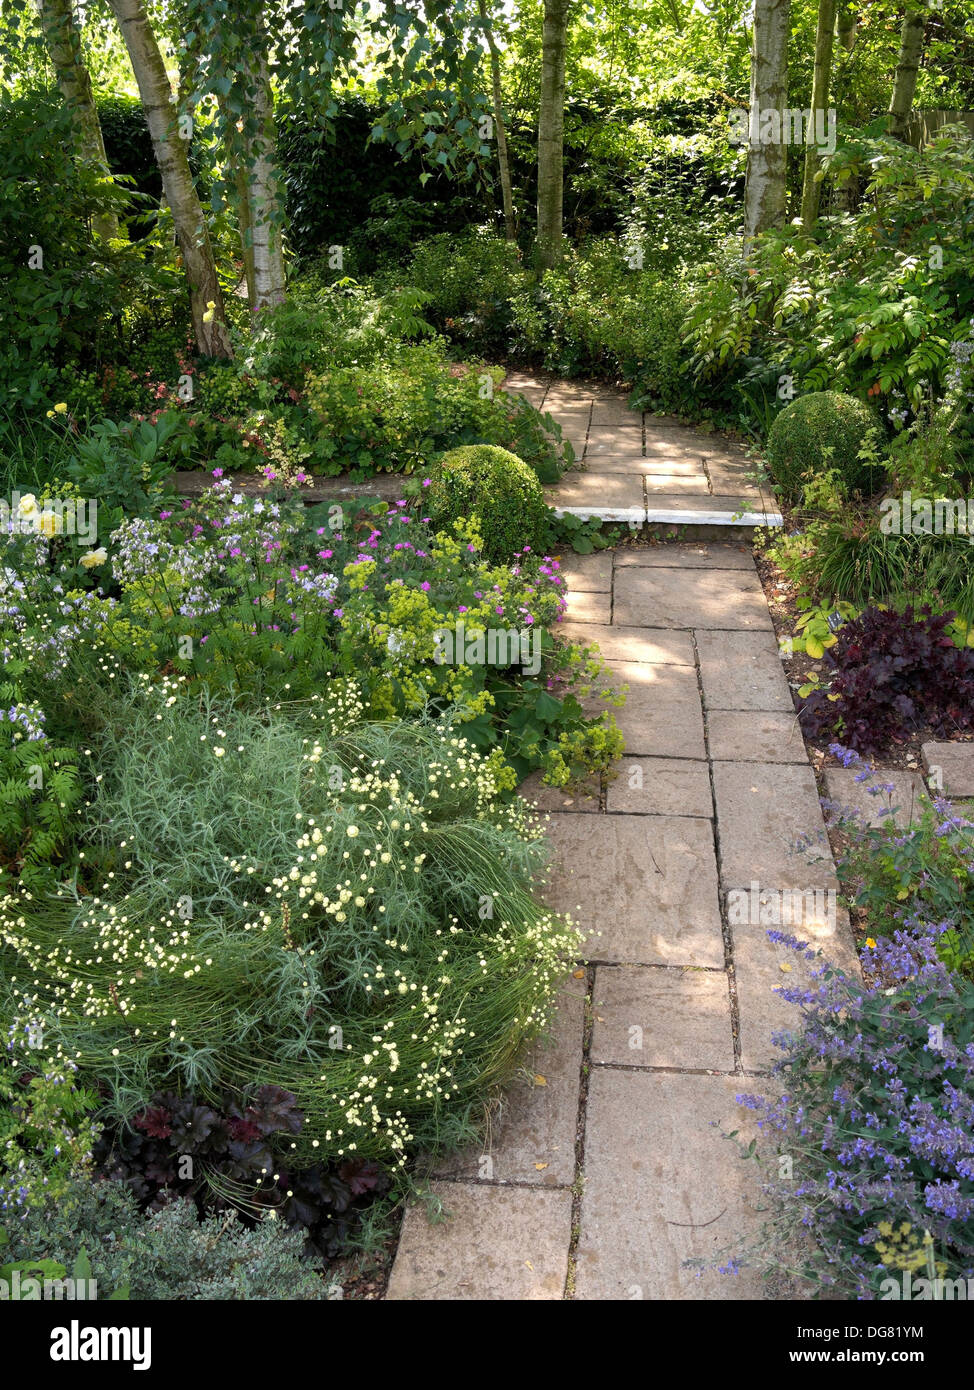 Jolie jardin pavé courbé entre chemin Barnsdale, jardins, Oakham, Rutland, England, UK. Banque D'Images